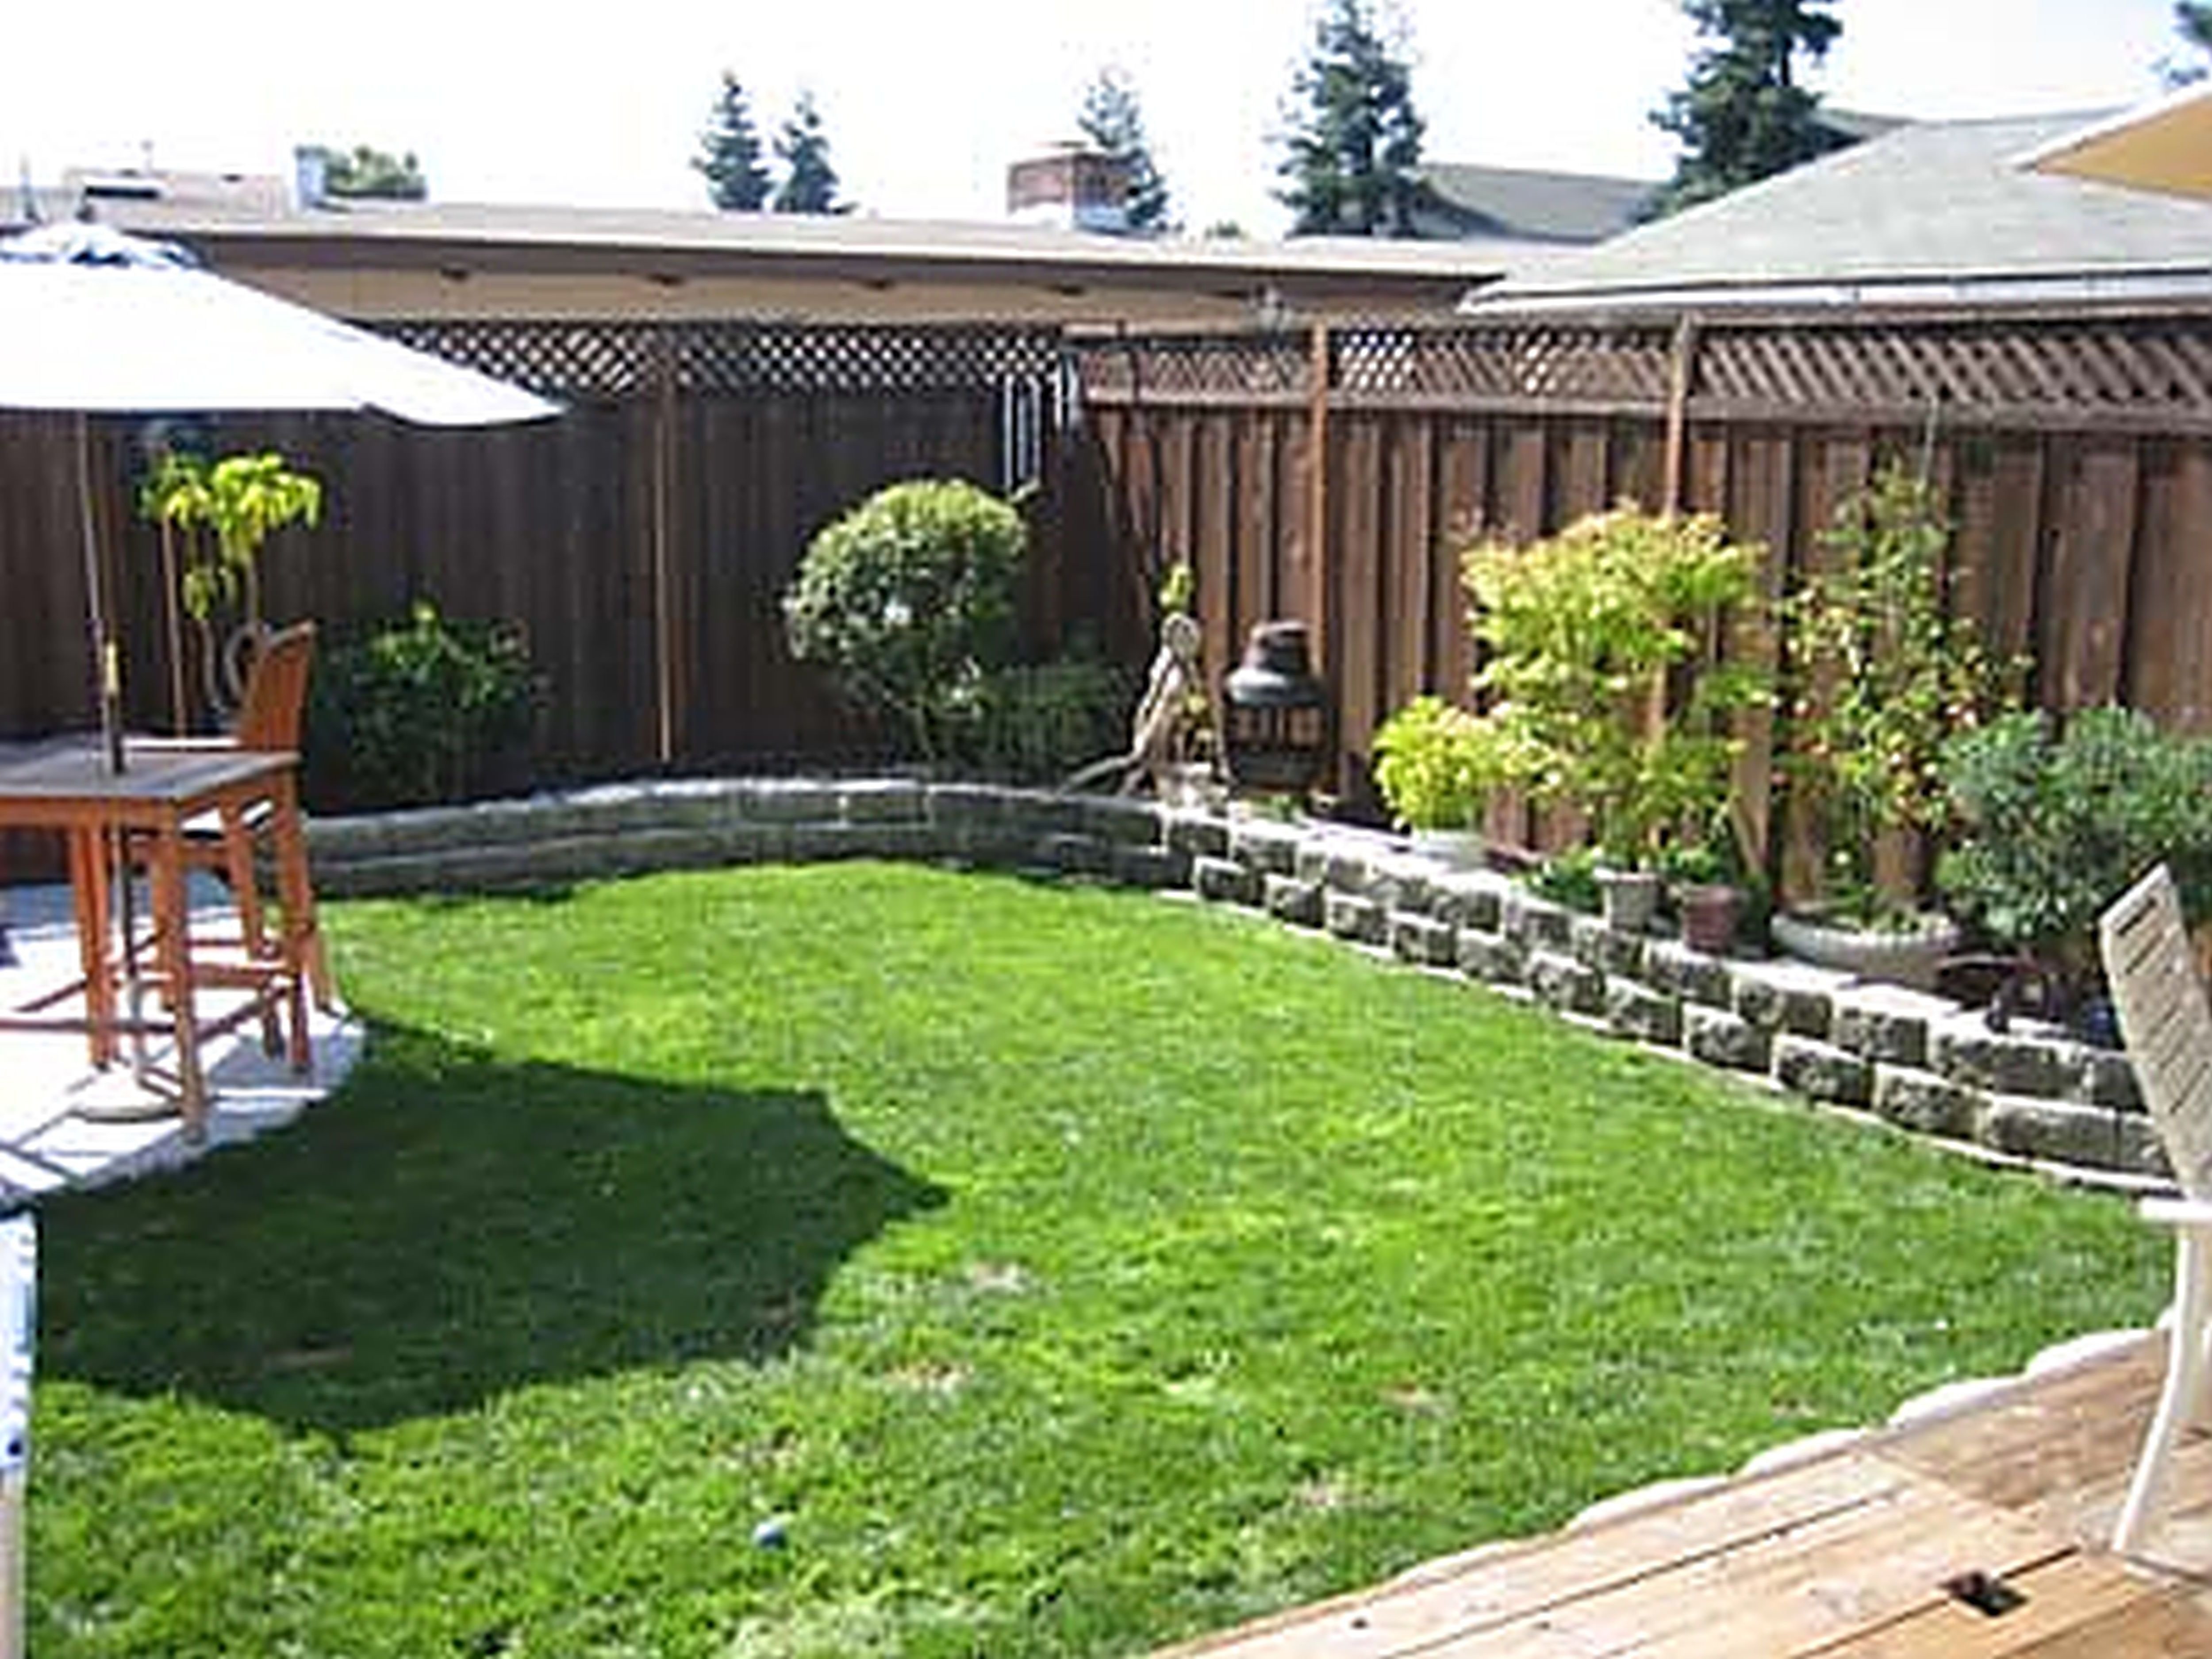 10 Awesome Yard Ideas On A Budget yard landscaping ideas on a budget small backyard landscaping 1 2023